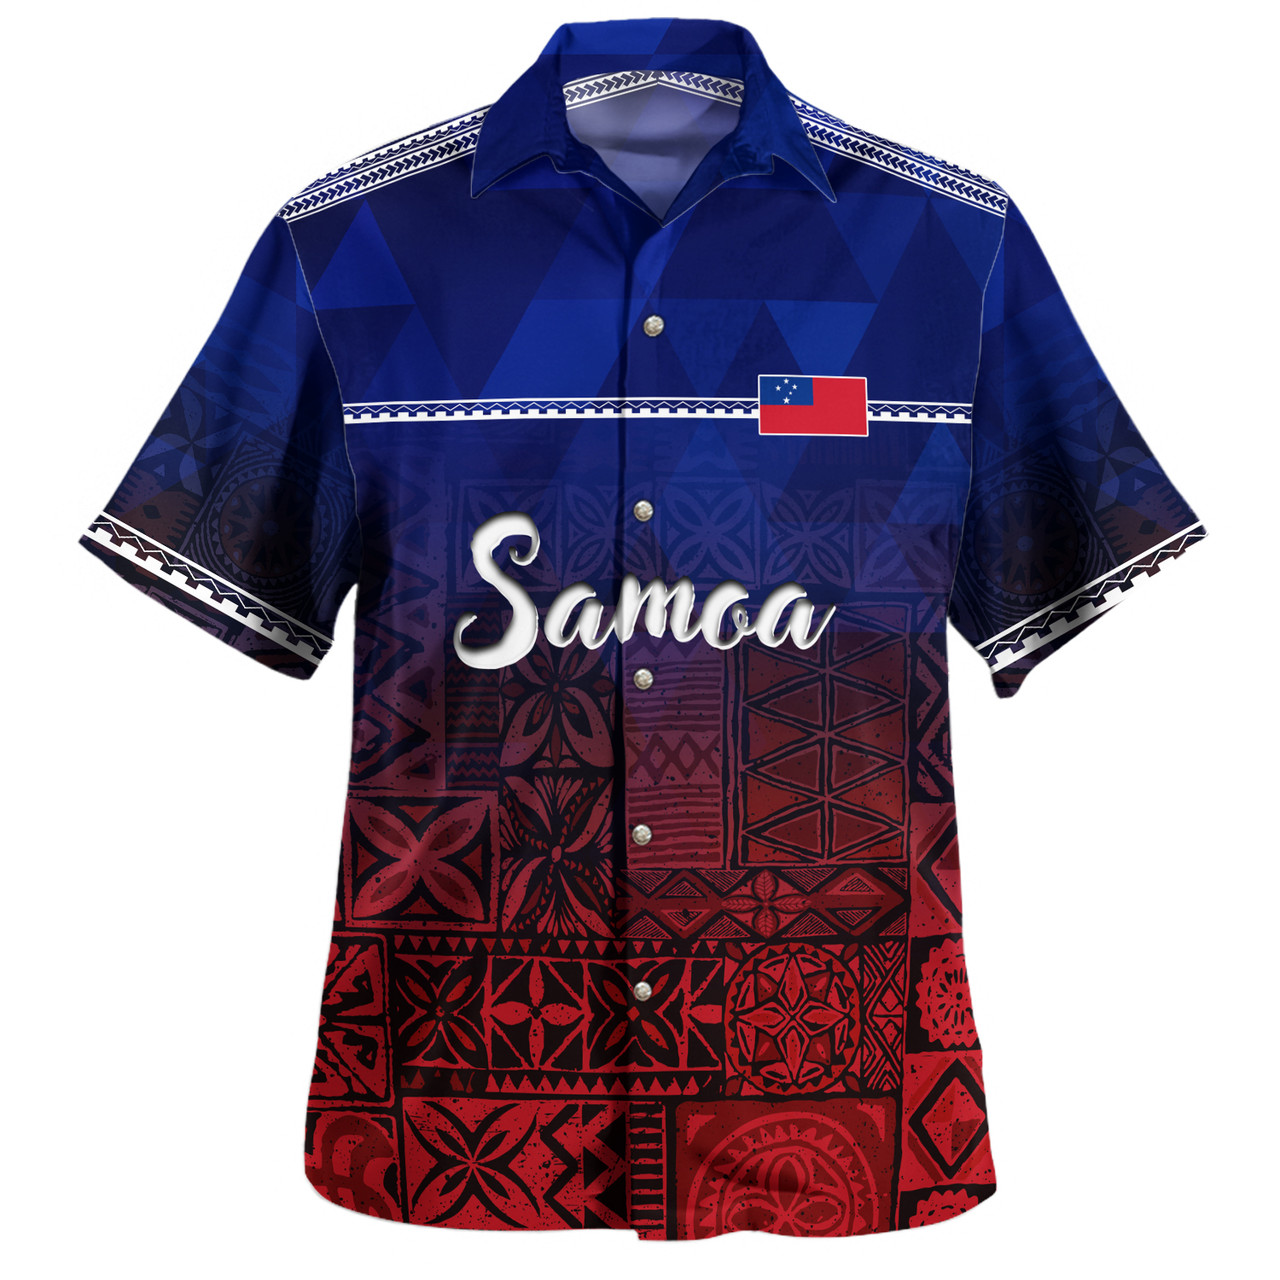 Samoa Hawaiian Shirt Lowpolly Pattern with Polynesian Motif